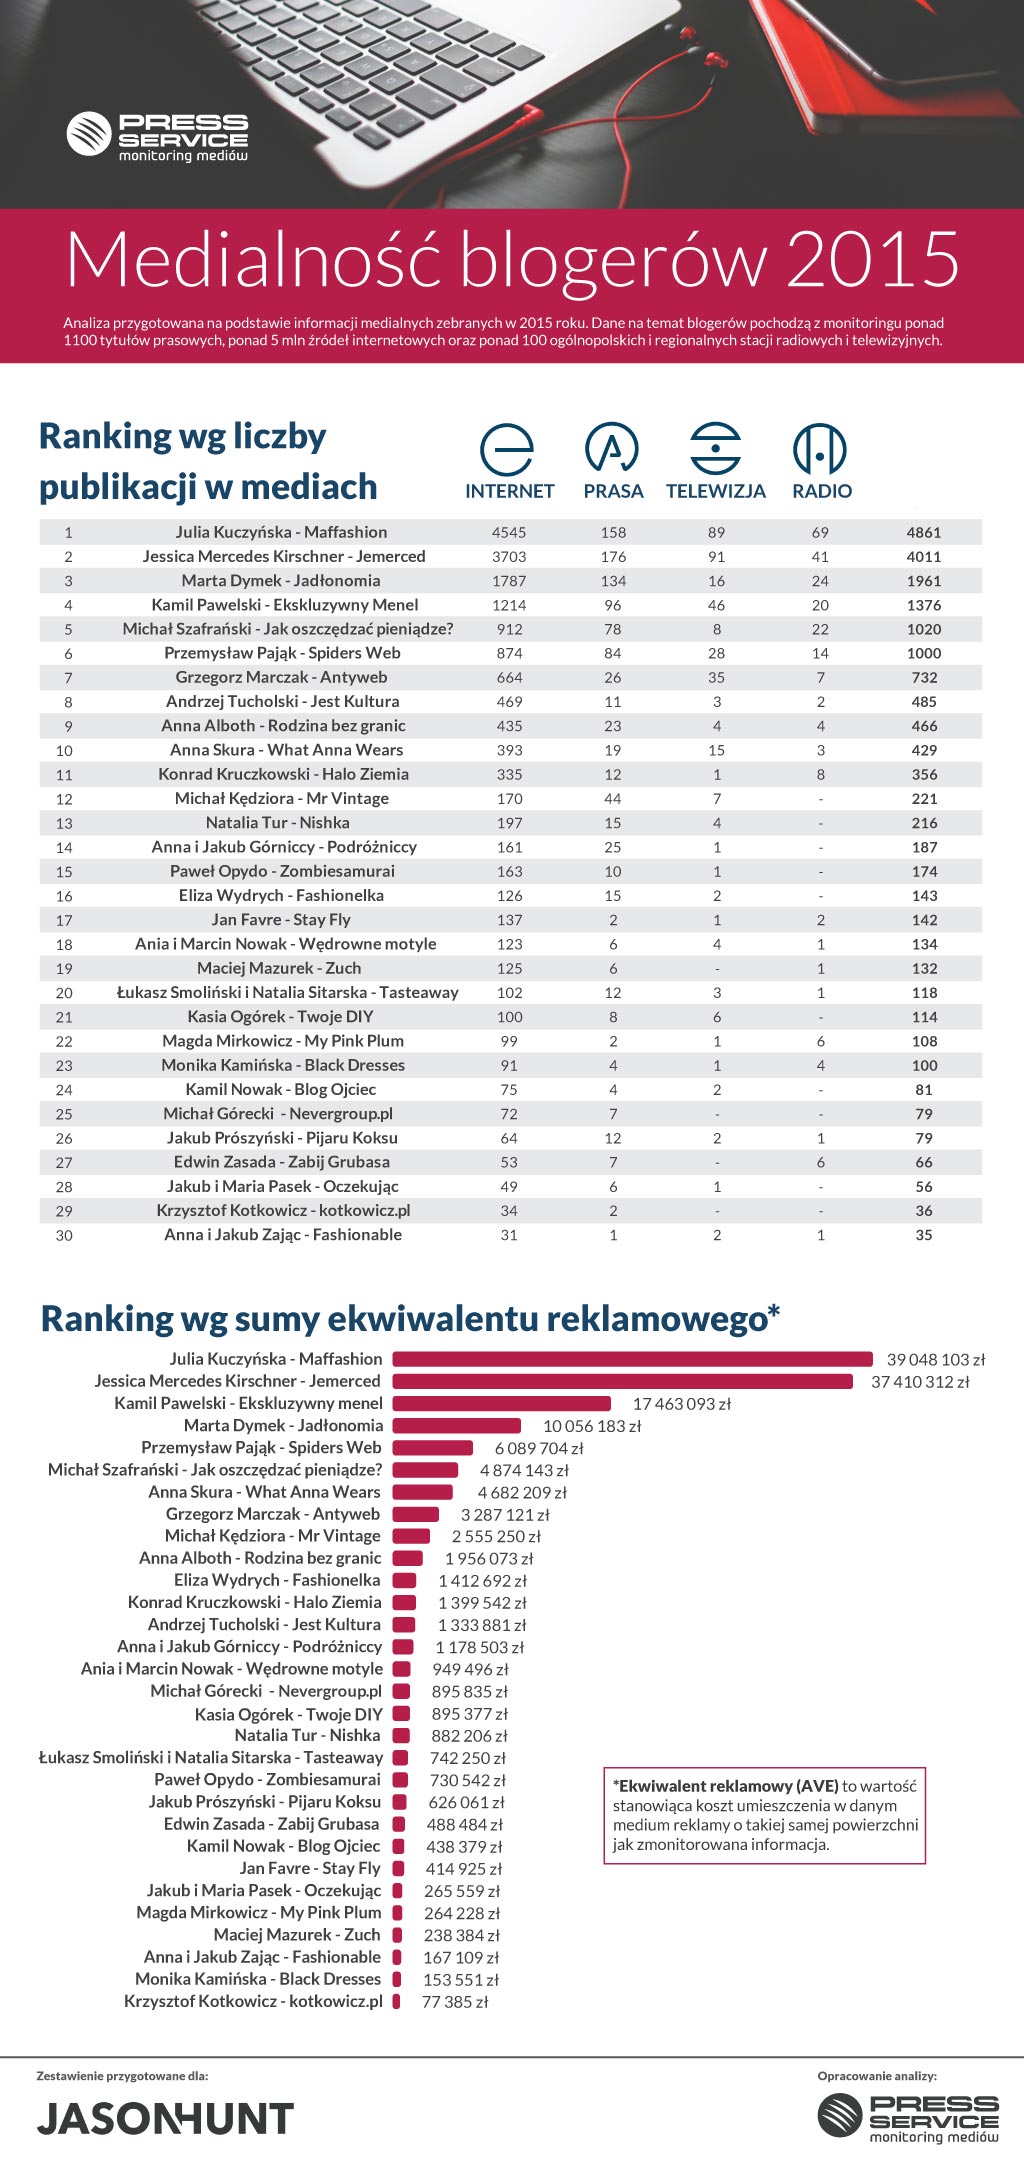 Blogosławieni w mediach – ranking JasonHunta 2015